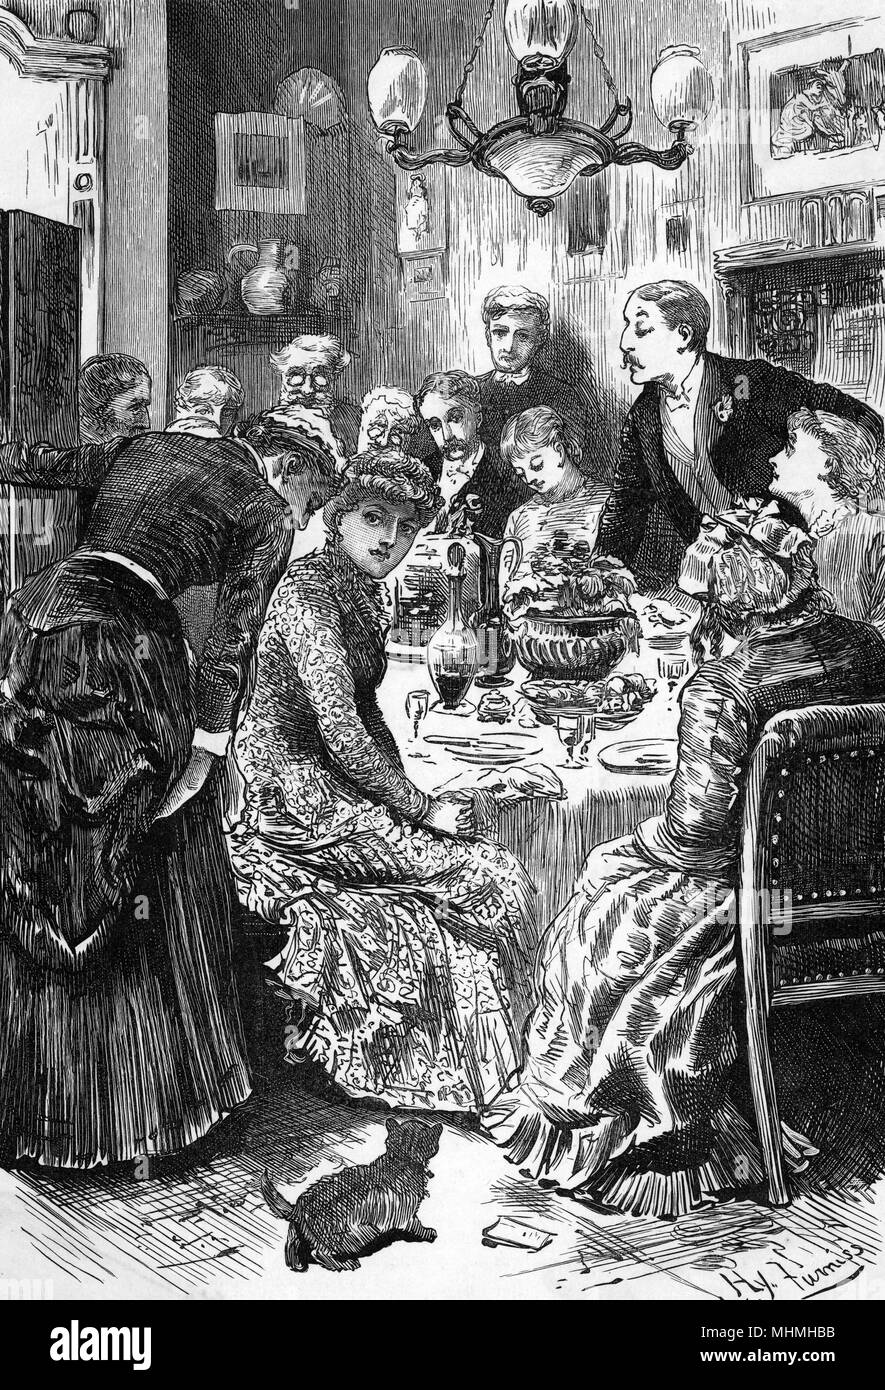 La cameriera ci porta cattive notizie dalla cucina... Data: 1883 Foto Stock